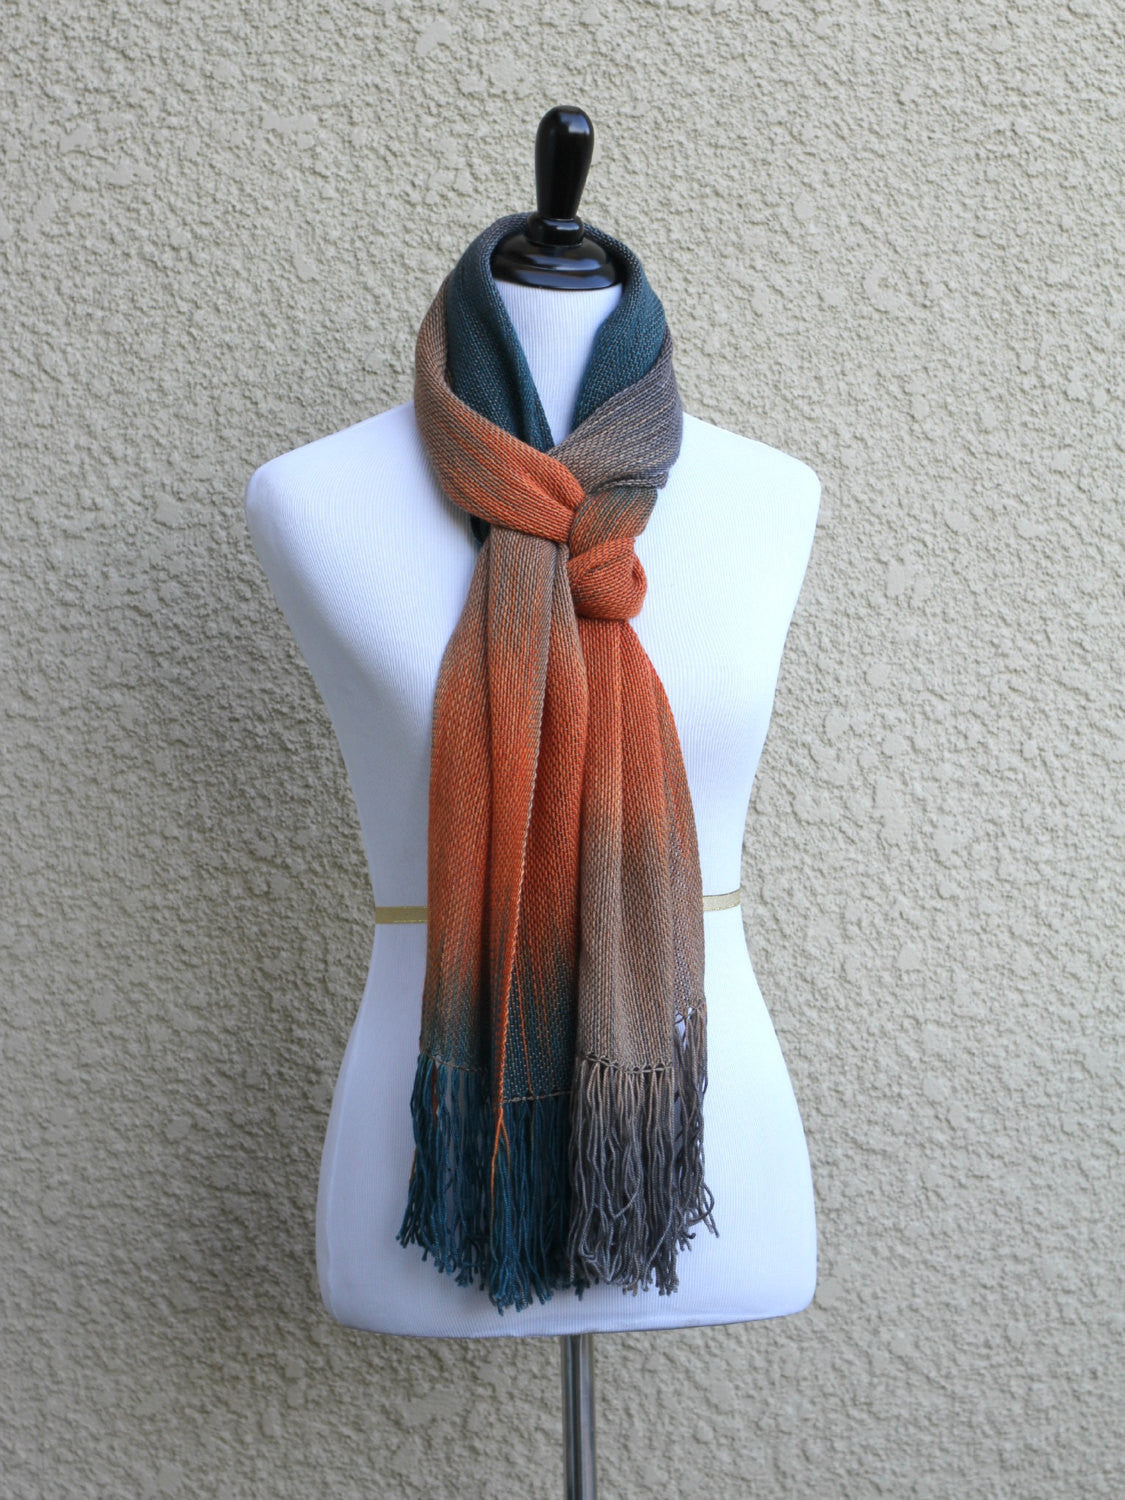 Orange, dark blue and beige scarf